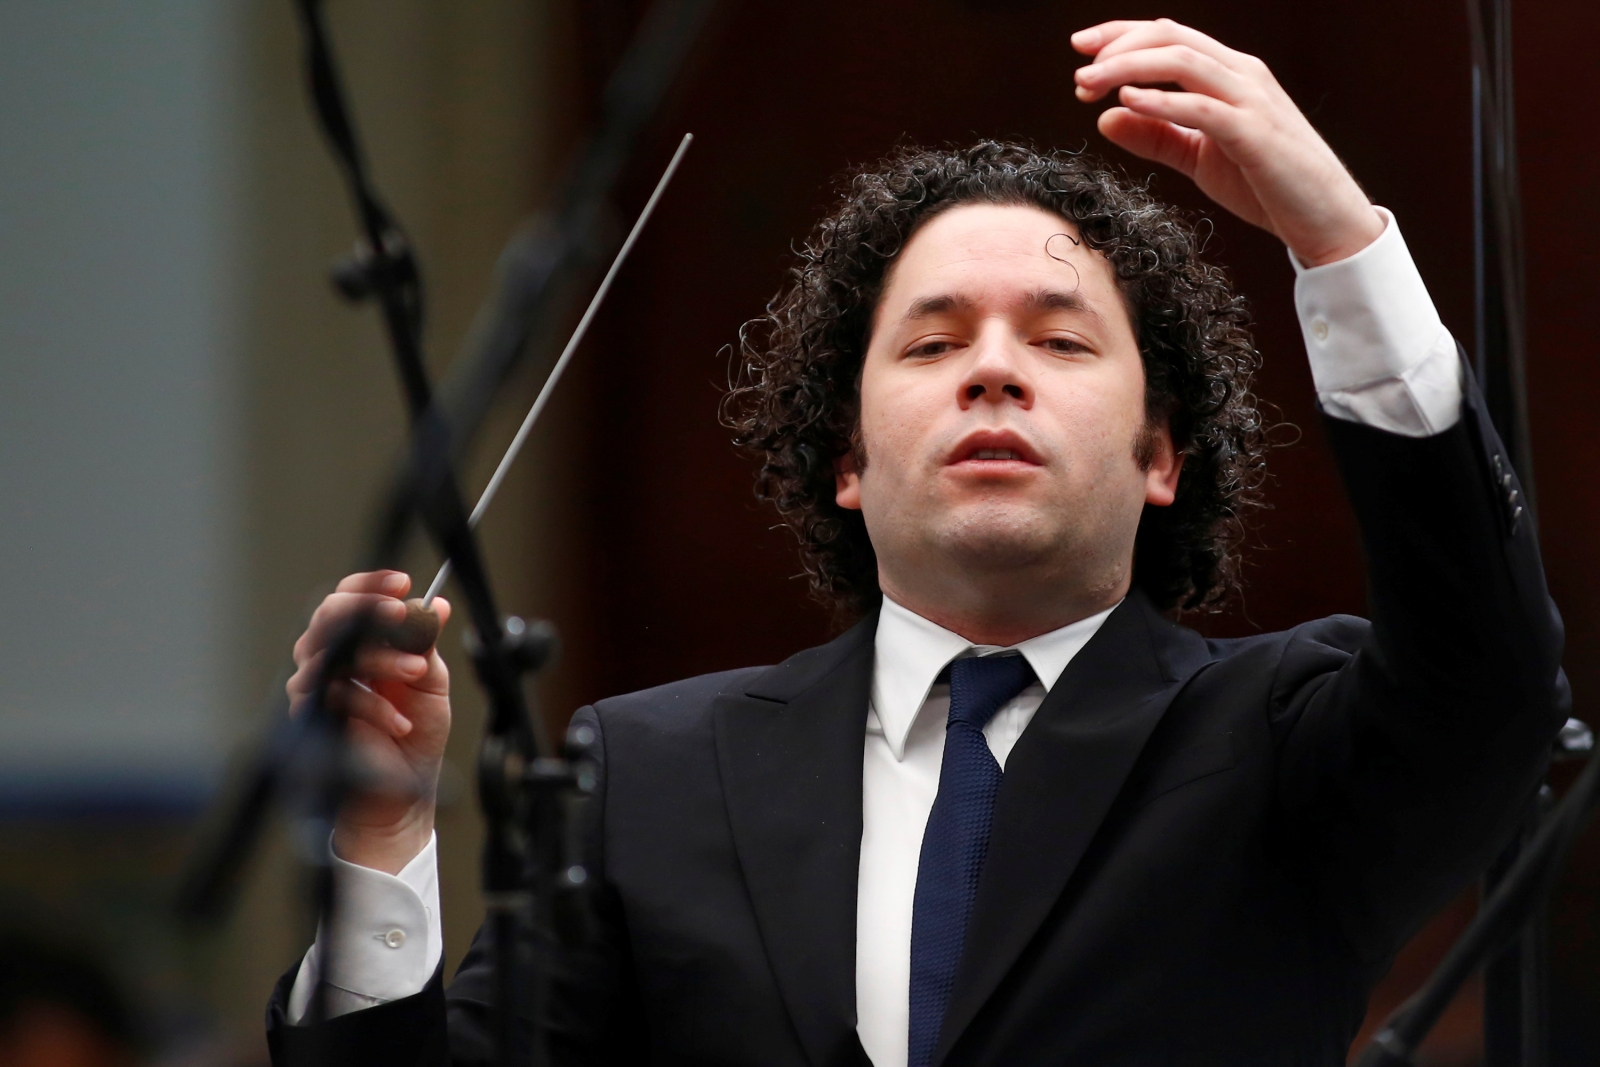 Gustavo Dudamel raises his voice against Venezuelan government: 'Enough